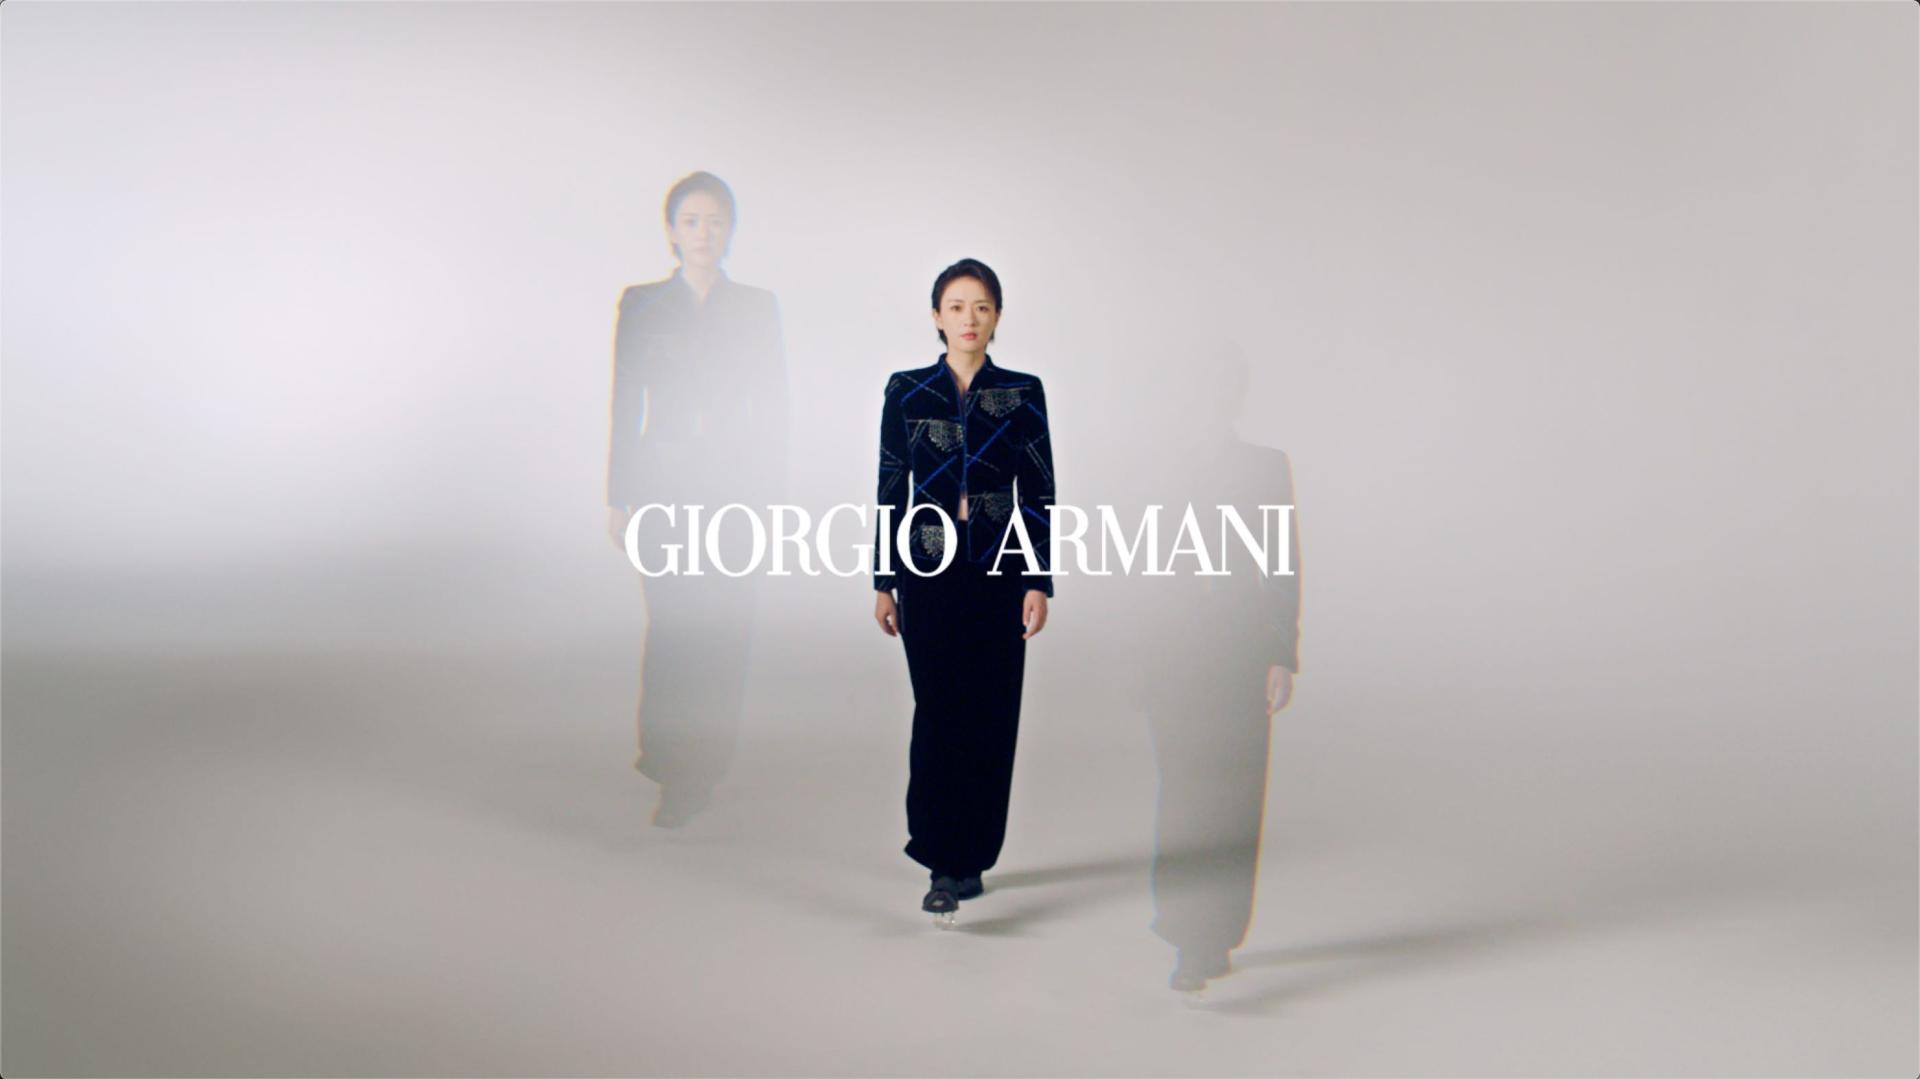 Giorgio Armani x 童瑶 官宣中国区品牌形象大使